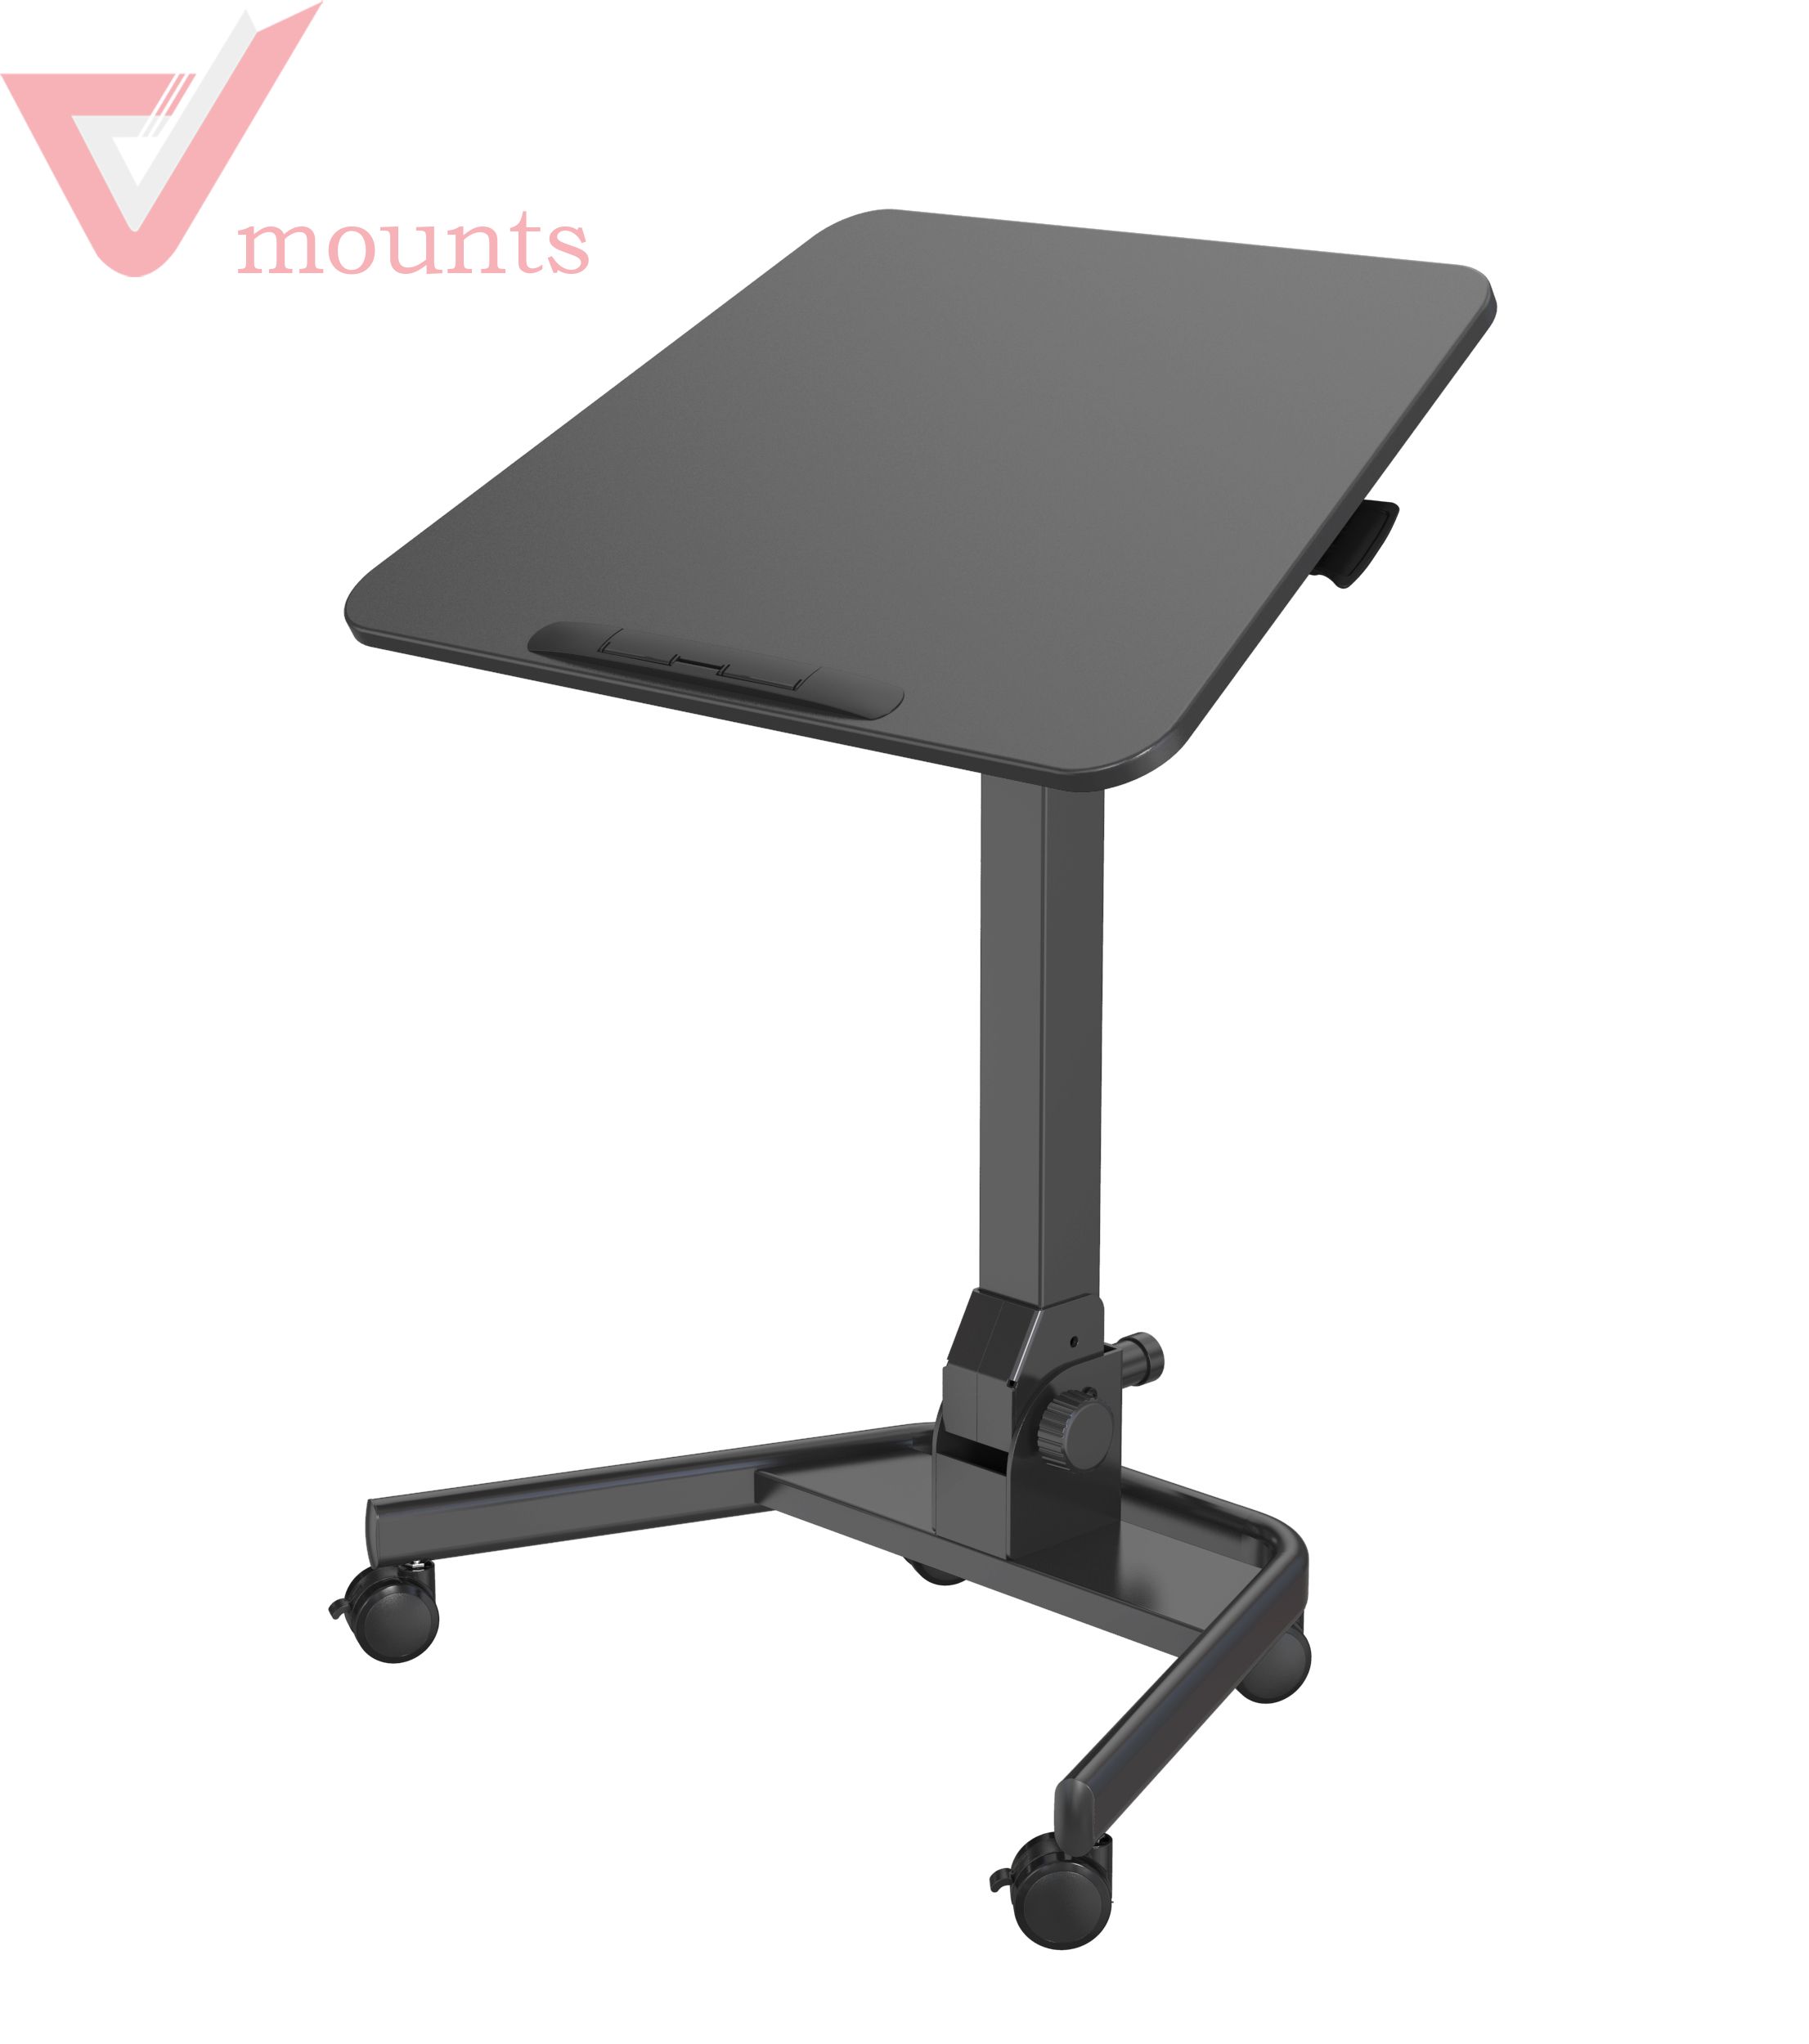 V-mounts ErgoTech Foldable Mobile Manual Height Adjustable Office Desk VM-FDS109